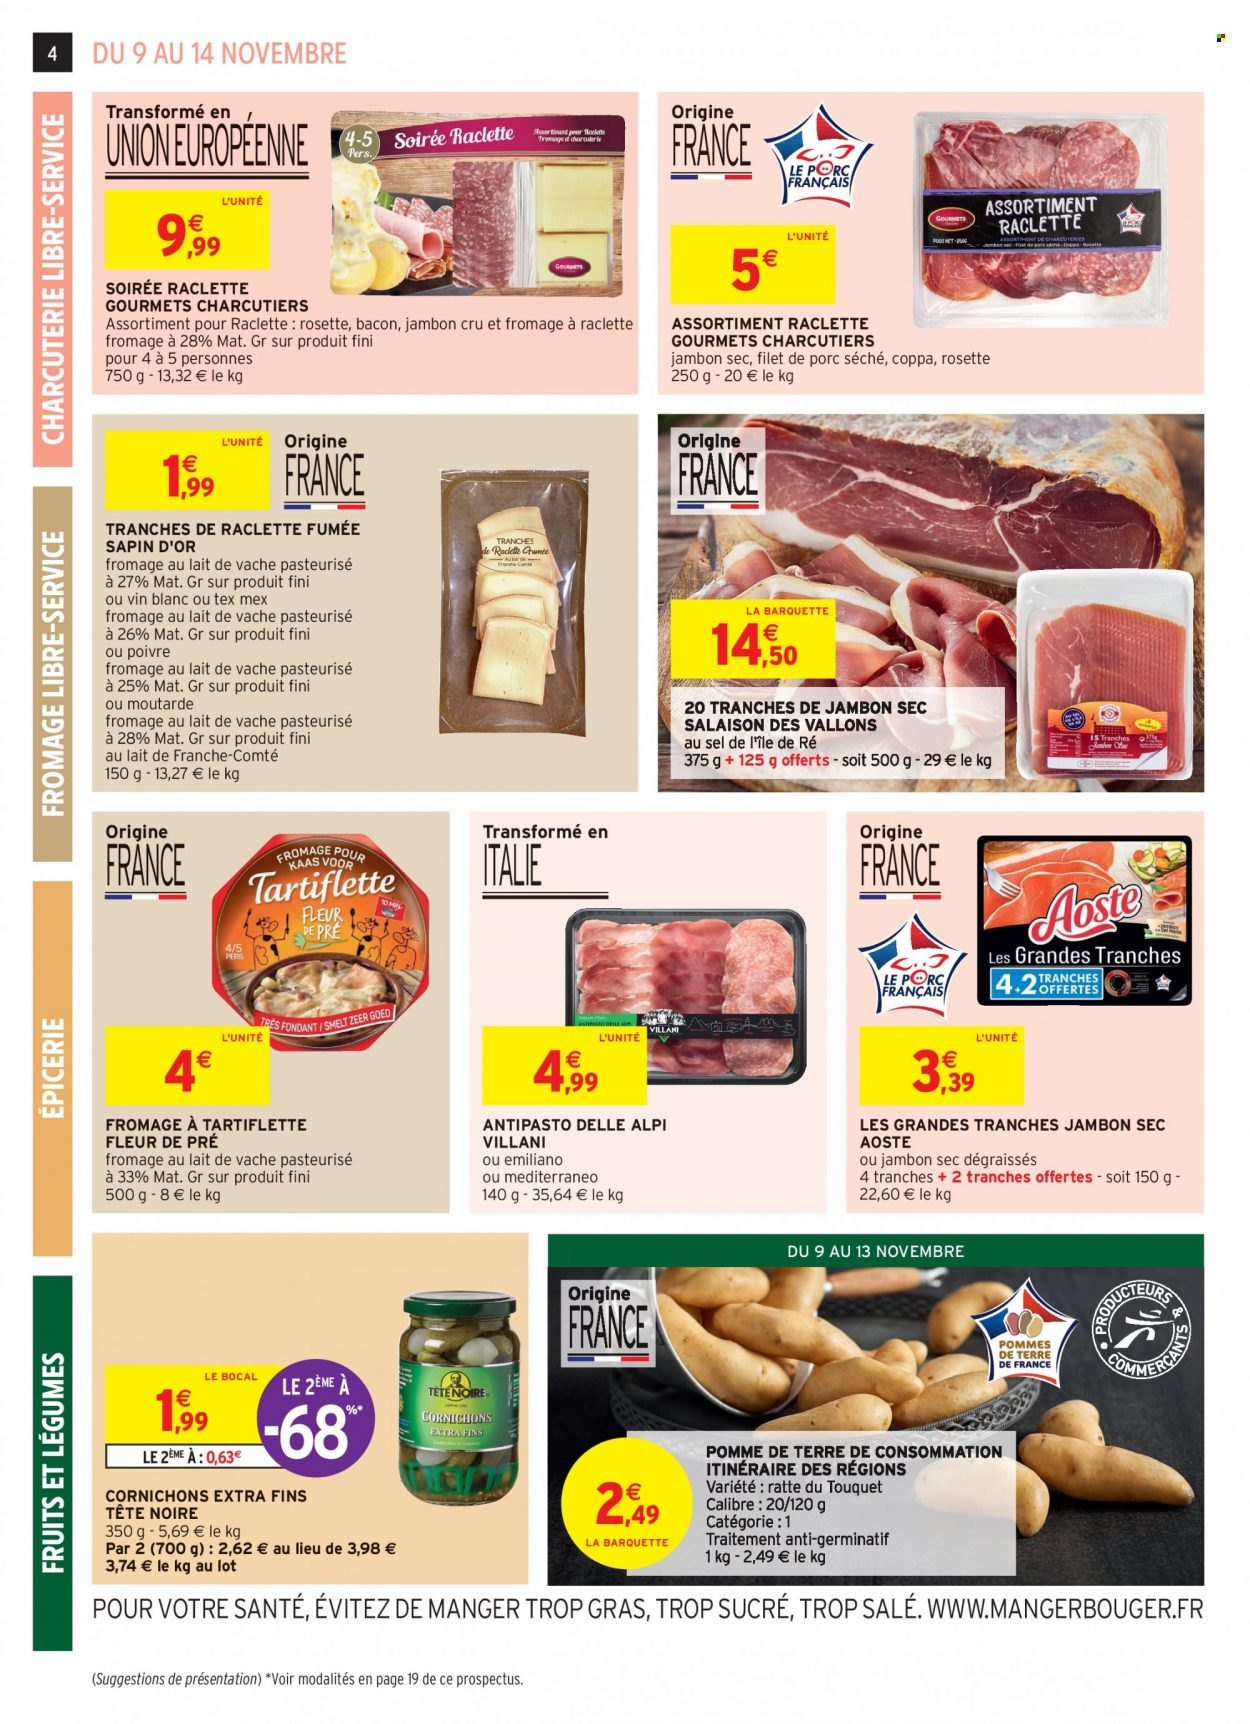 thumbnail - Catalogue Intermarché Hyper - Produits soldés - coppa, jambon sec, rosette, bacon, Aoste, fromage à raclette, La Raclette, cornichons. Page 4.